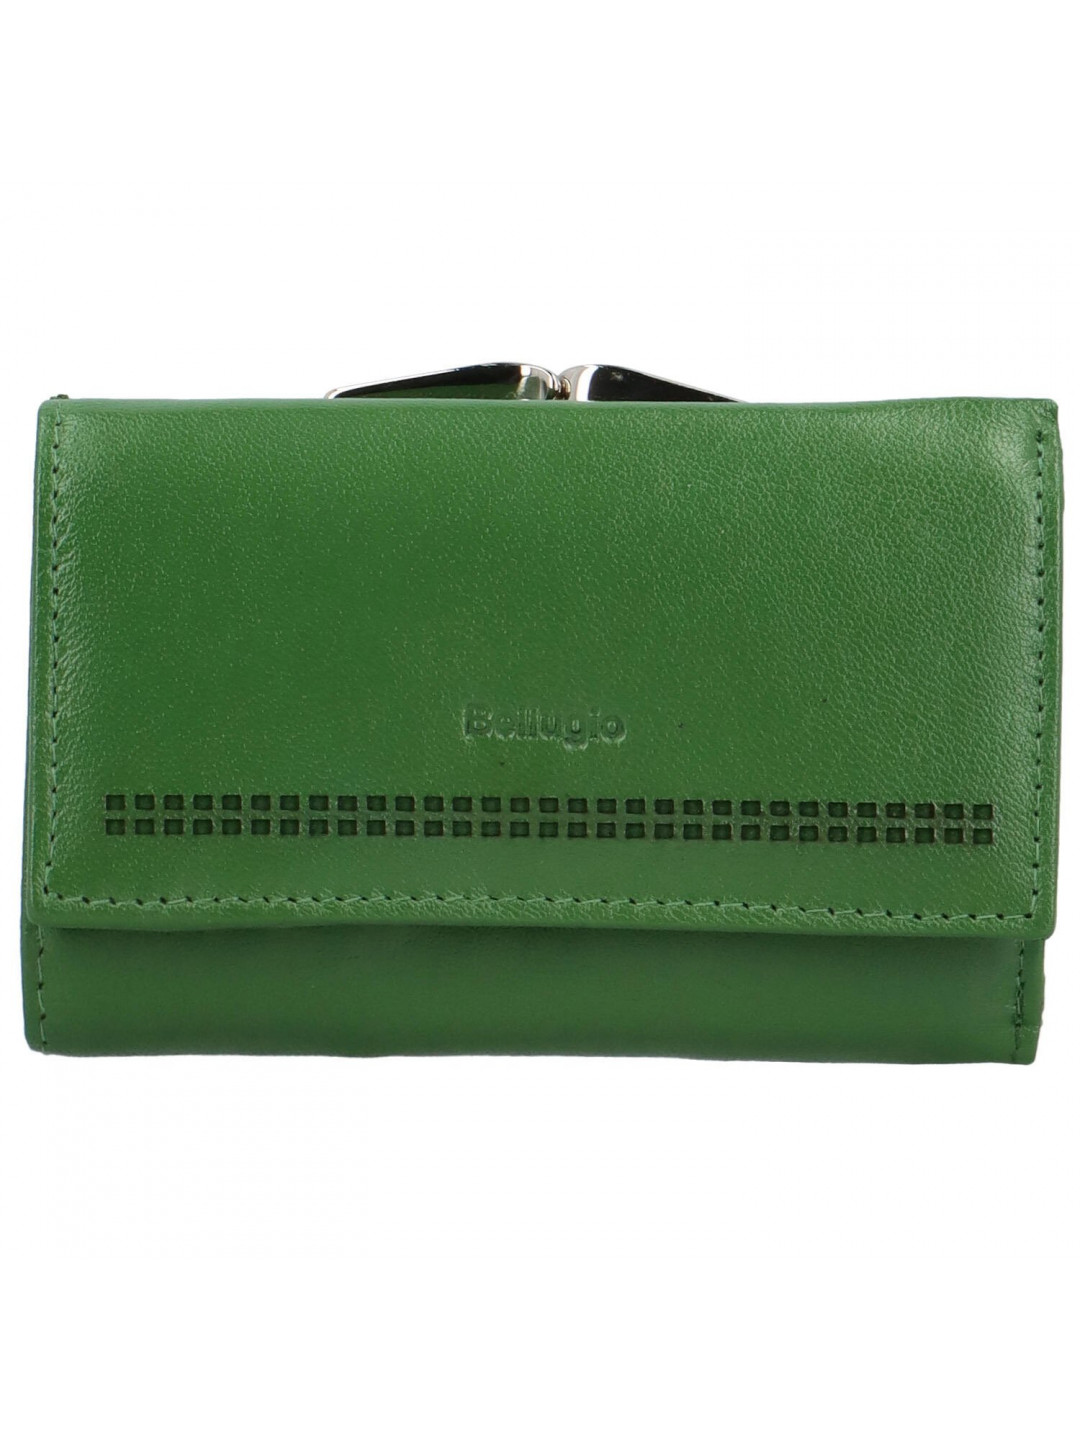 Dámská kožená peněženka zelená – Bellugio Xagnana